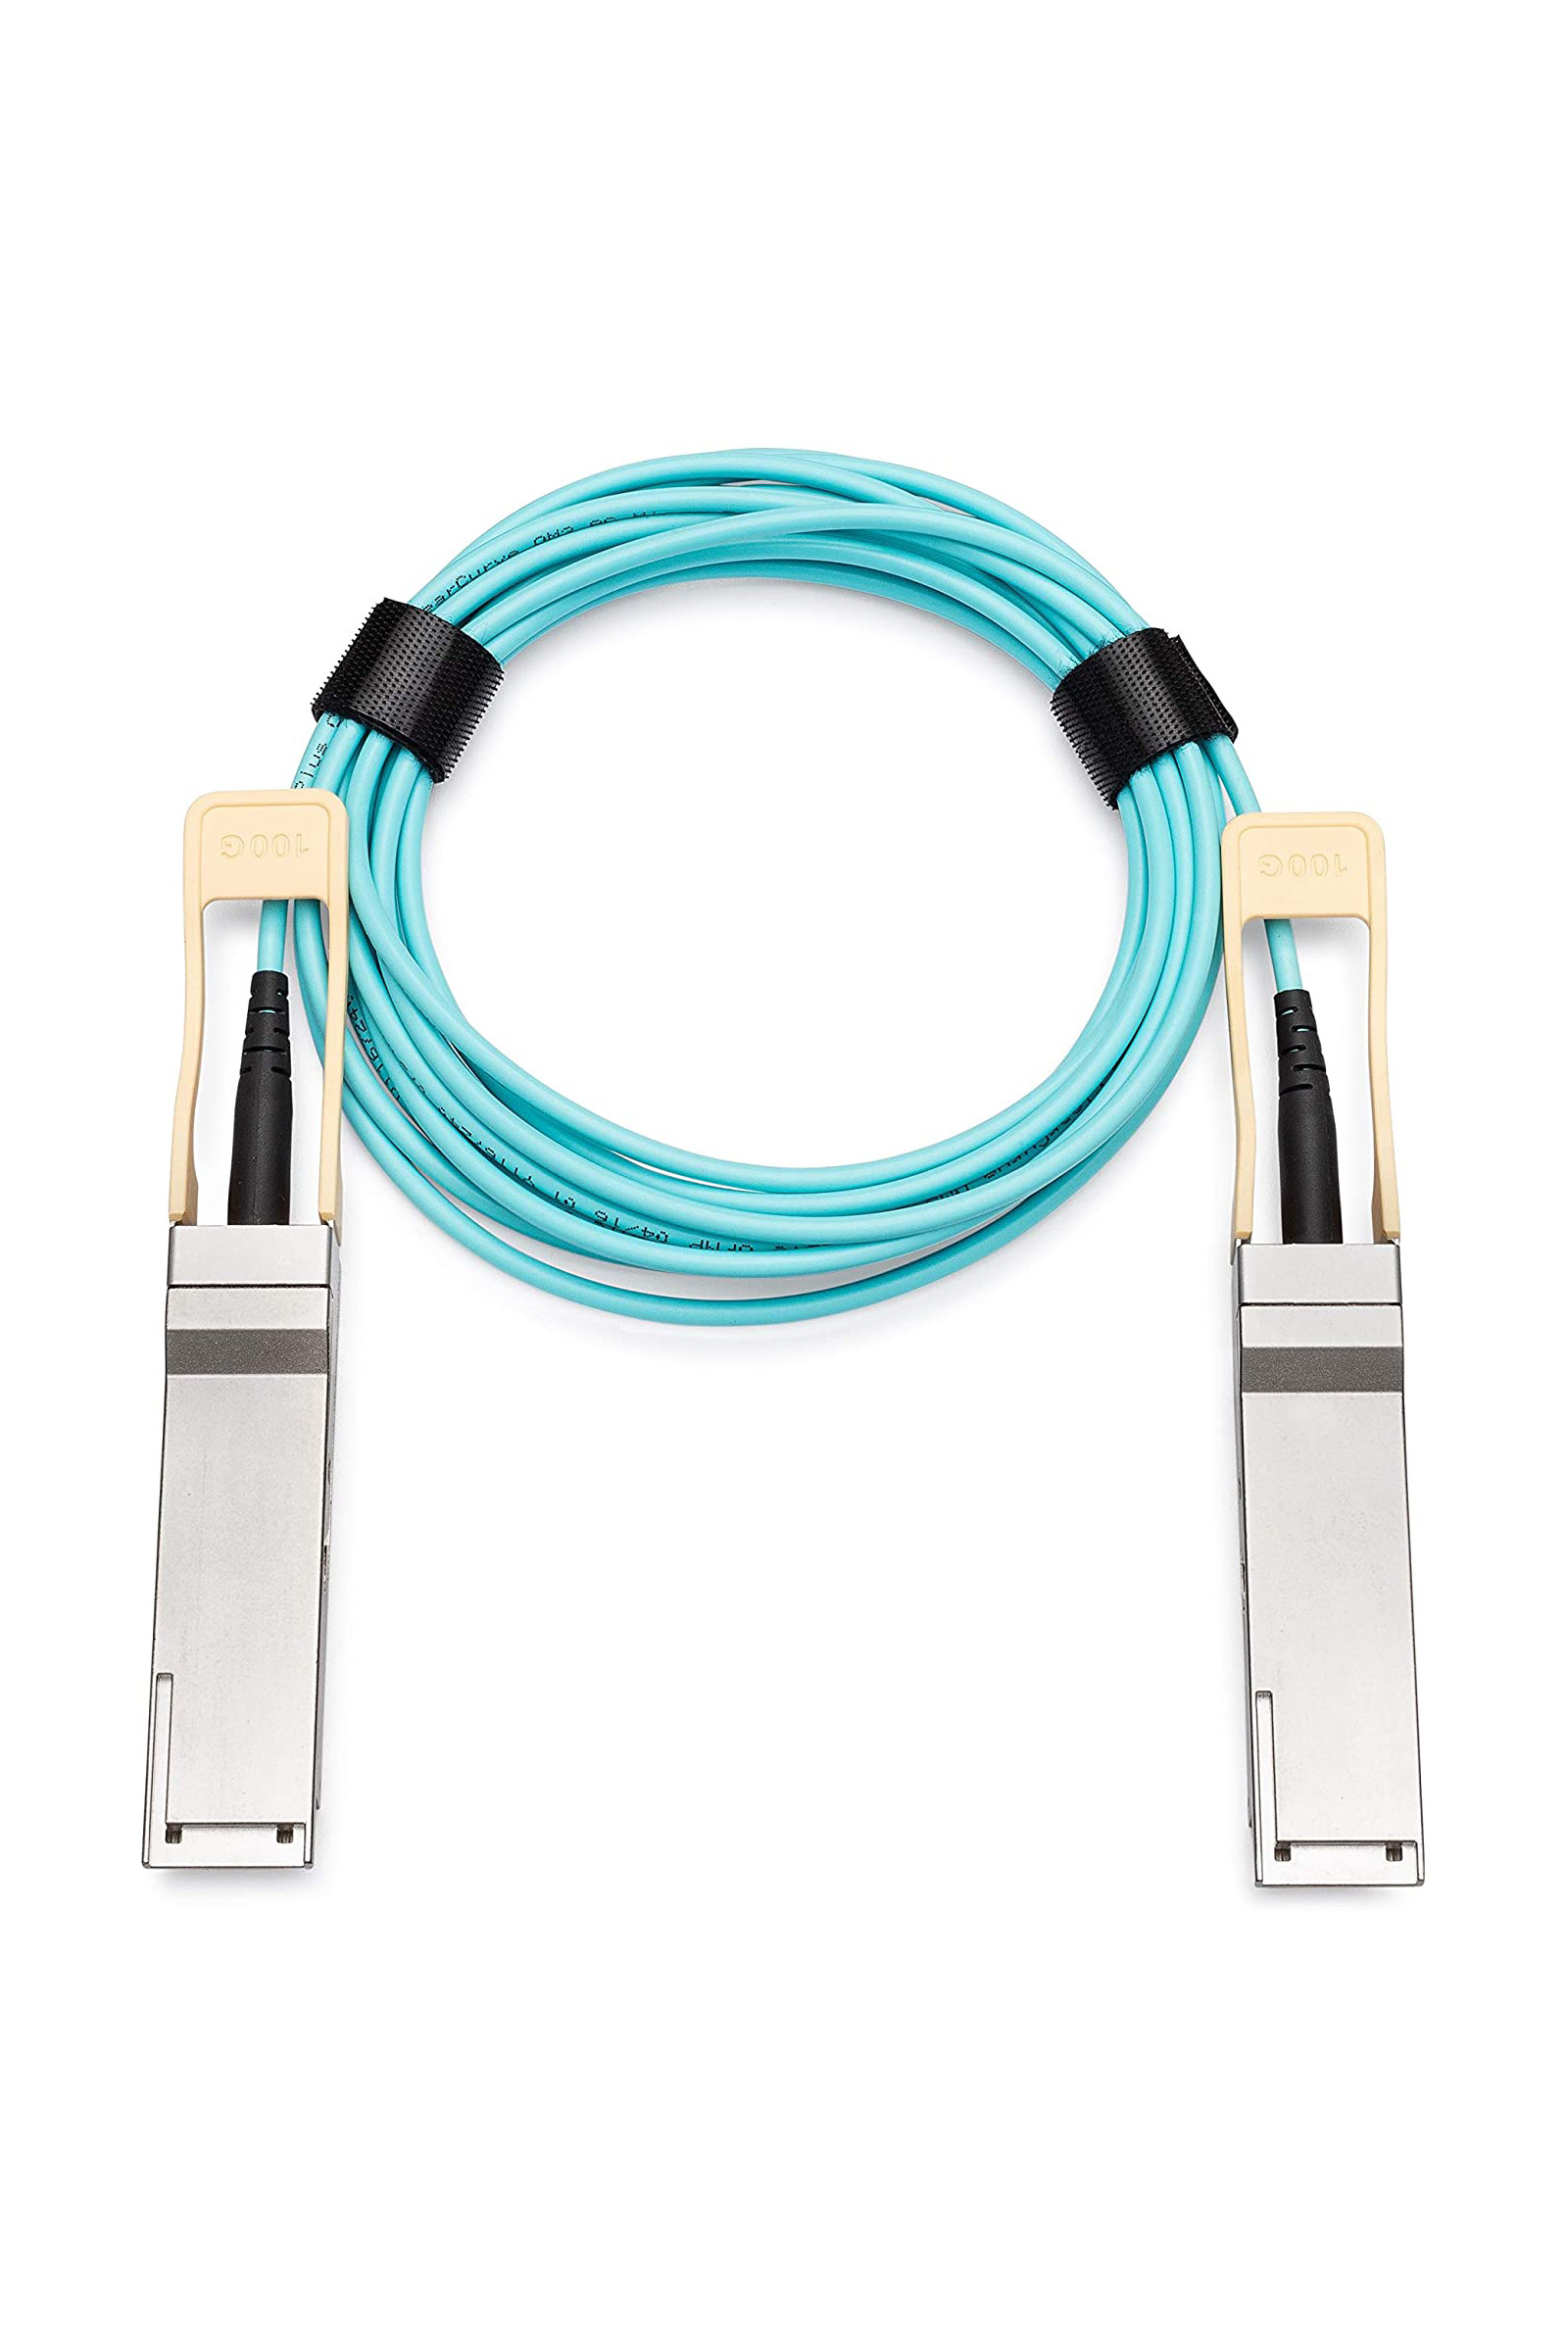 100G QSFP28 - QSFP28 Active Optical Cables (AOC)